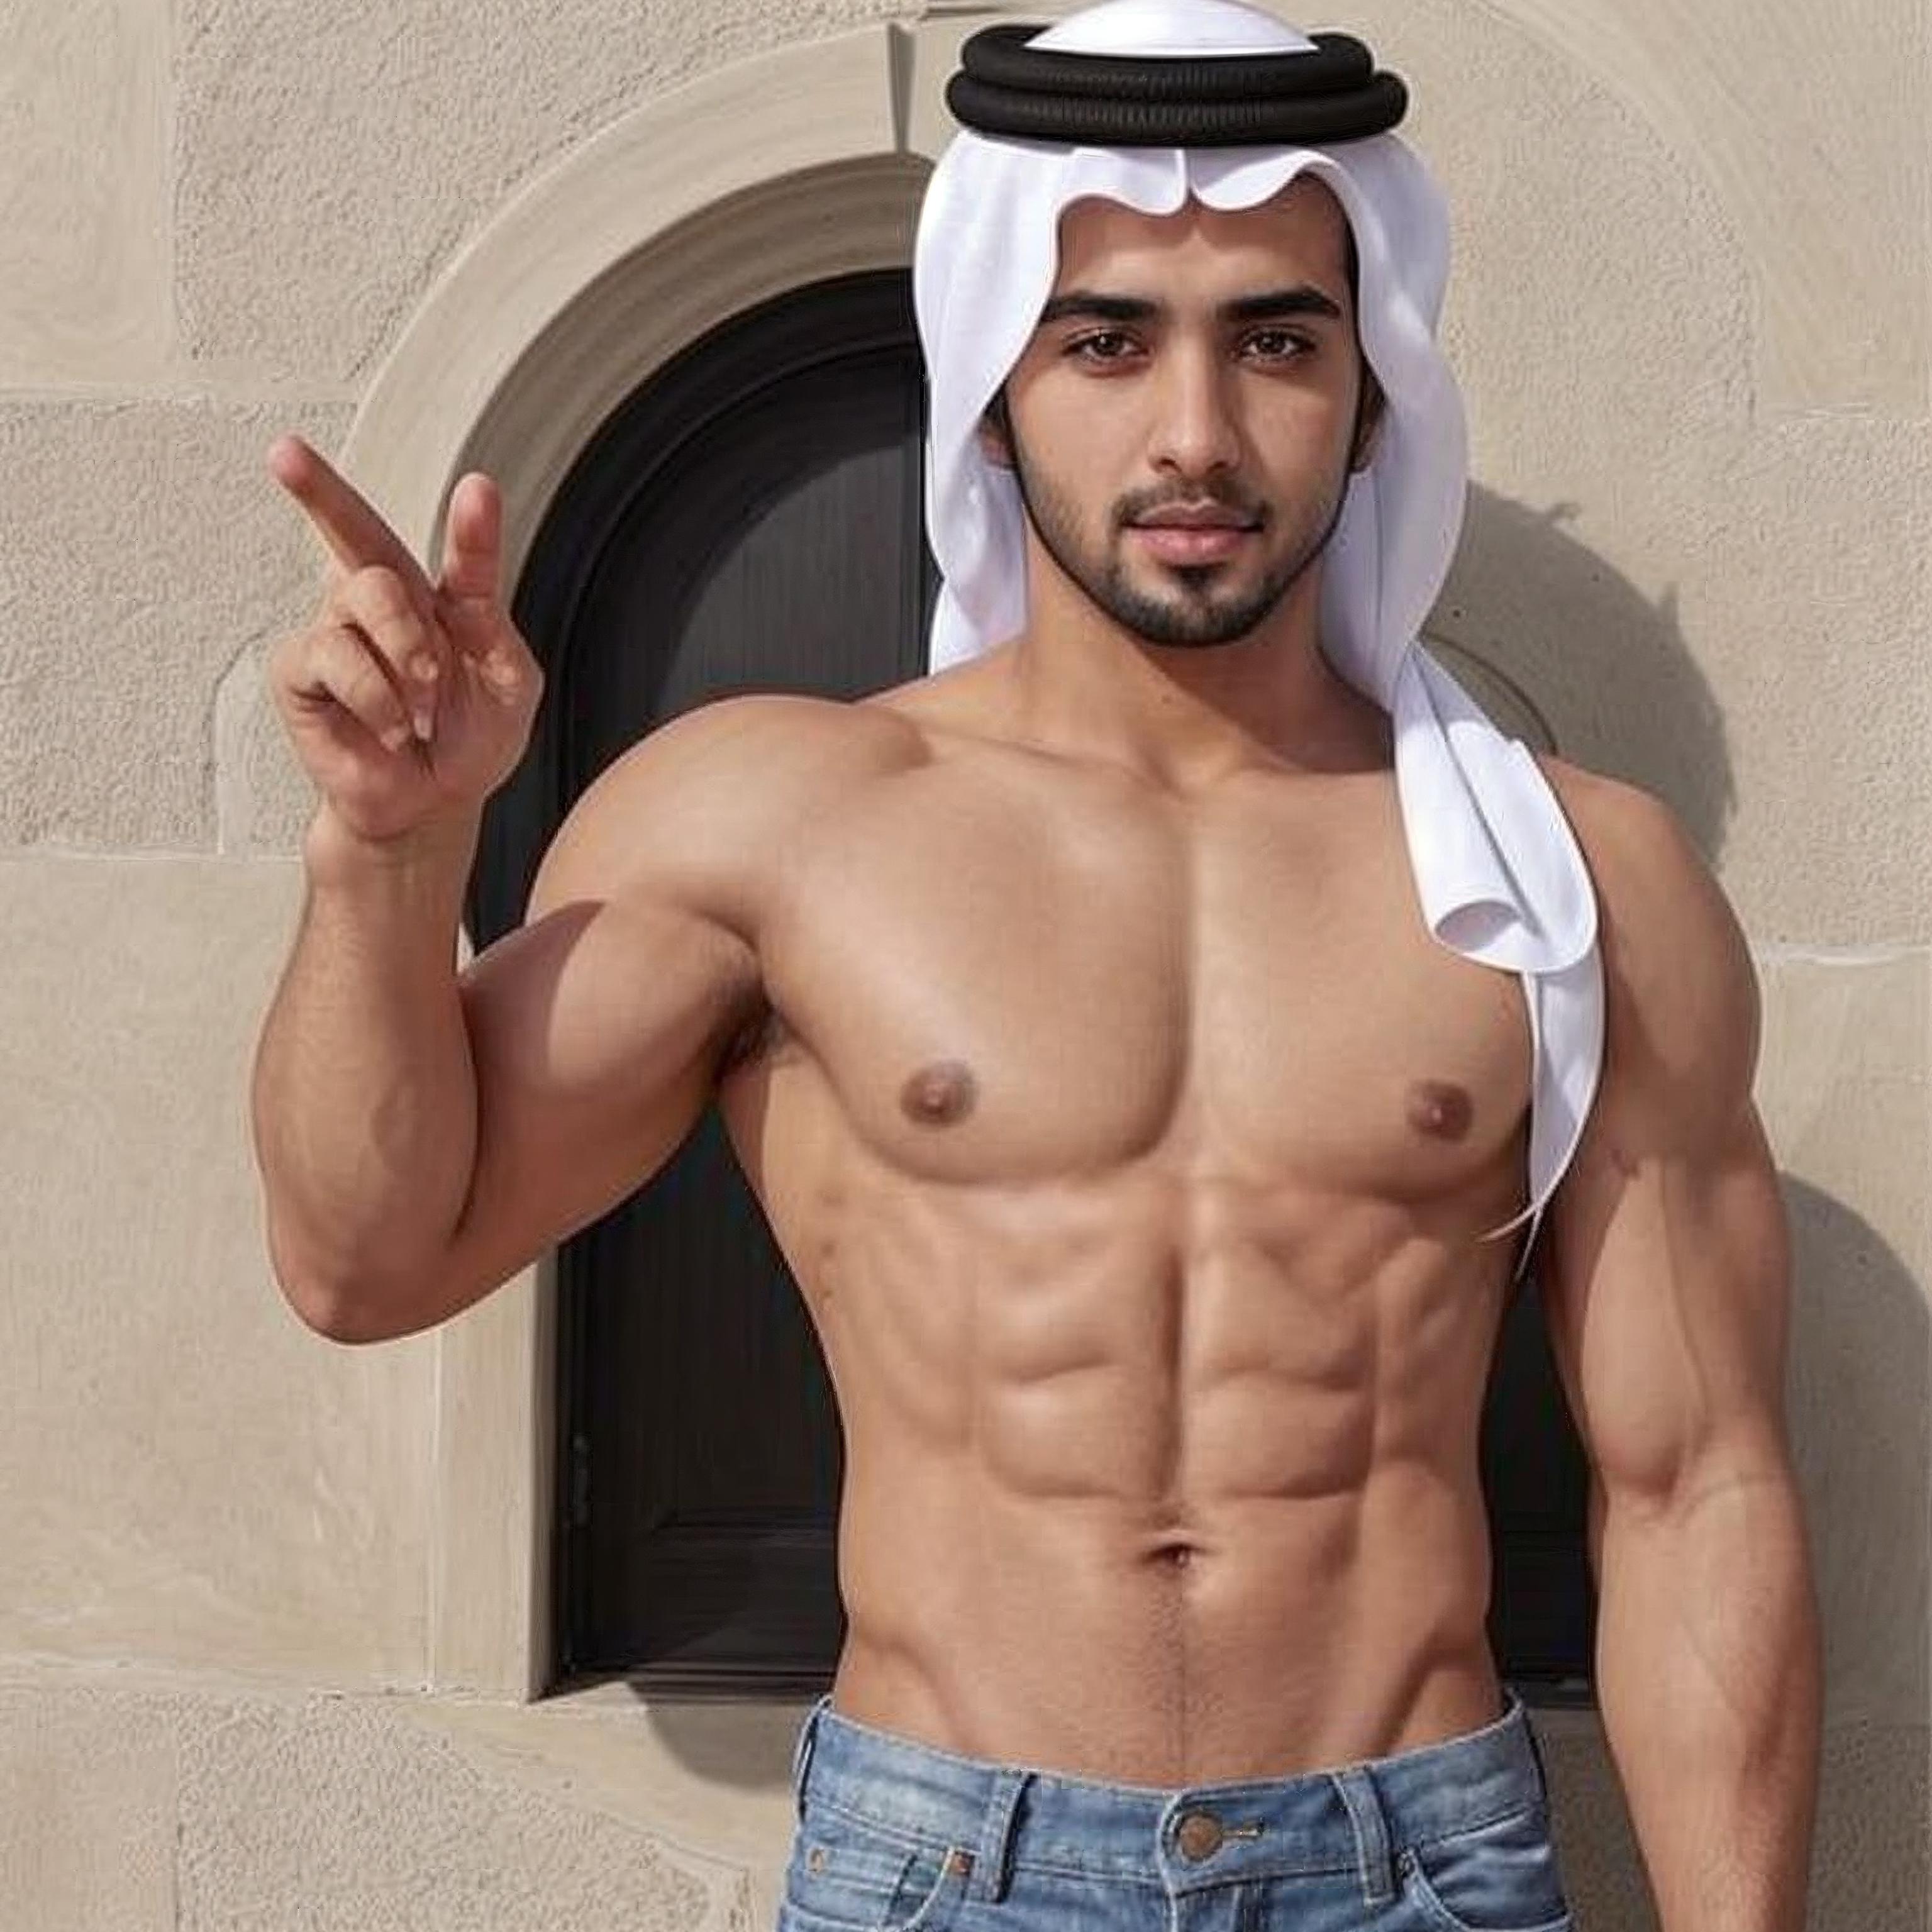 Arabian male (STYLE) image by Flyckarus